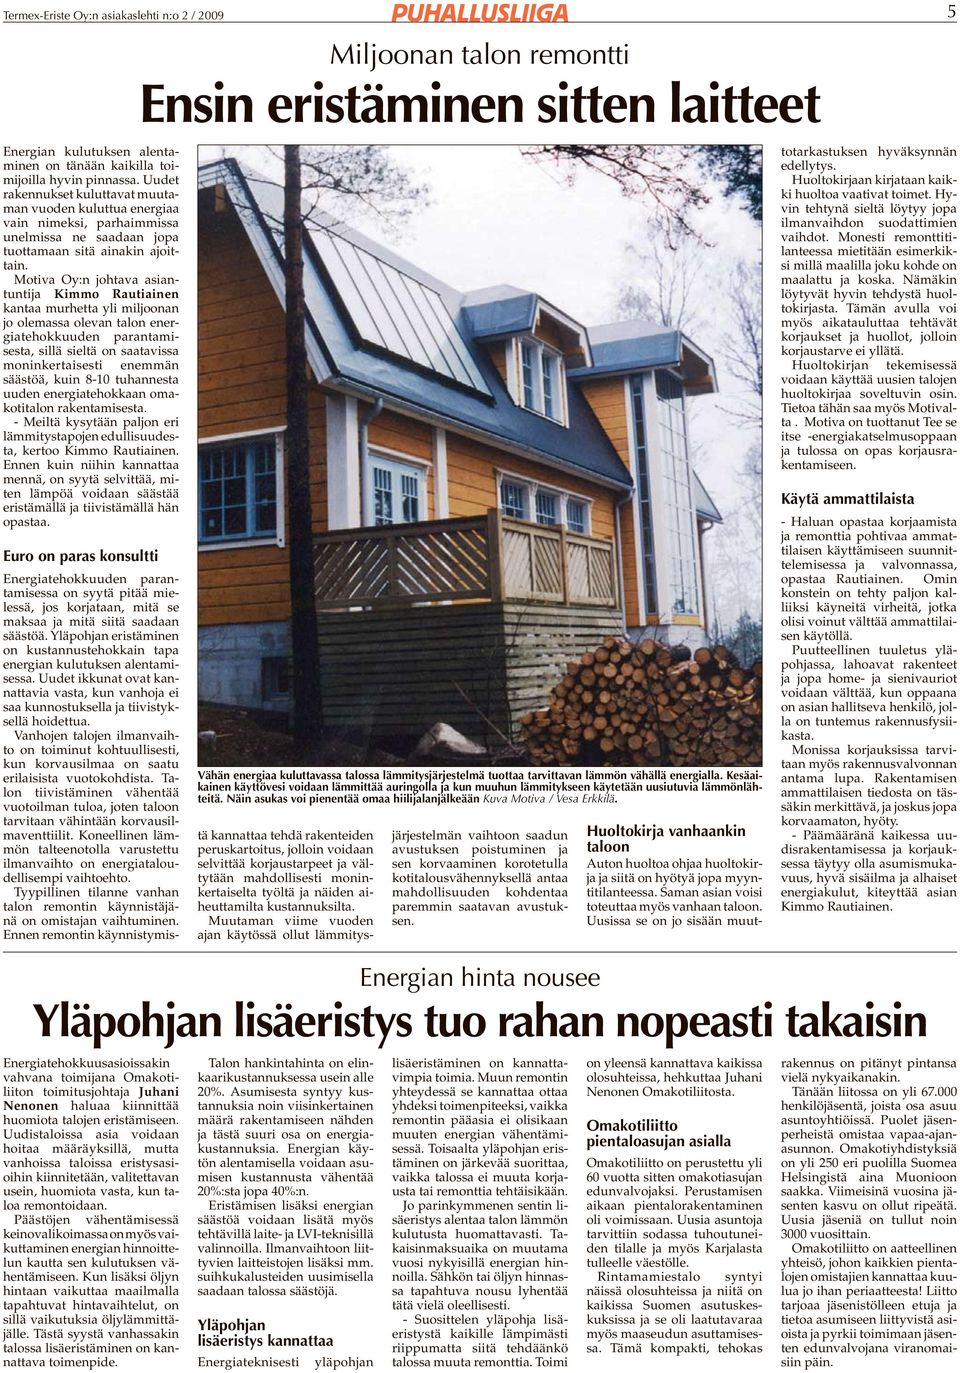 Motiva Oy:n johtava asiantuntija Kimmo Rautiainen kantaa murhetta yli miljoonan jo olemassa olevan talon energiatehokkuuden parantamisesta, sillä sieltä on saatavissa moninkertaisesti enemmän